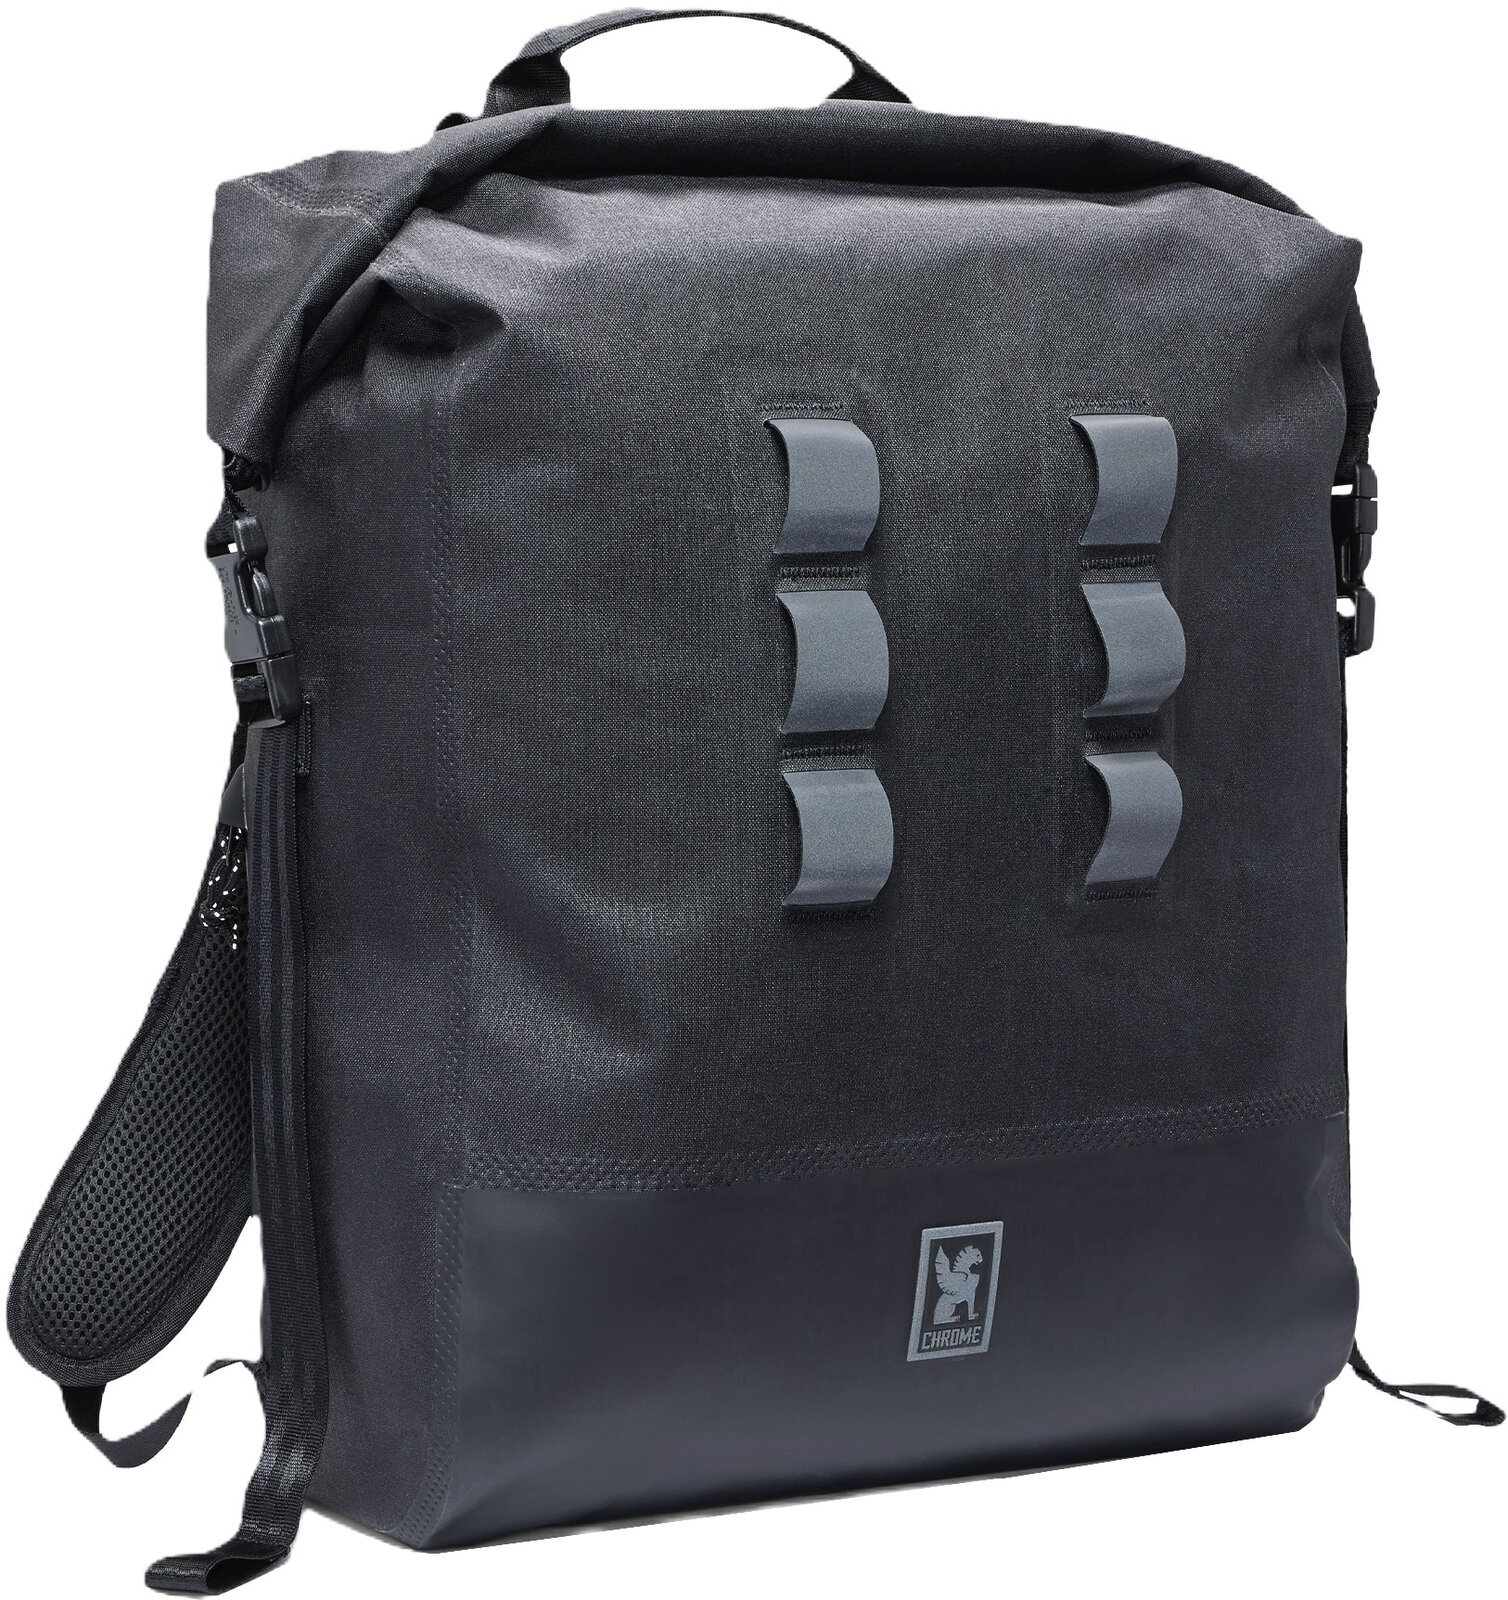 Photos - Backpack Chrome Chrome Urban Ex  Black 30 L  BG-375-BK